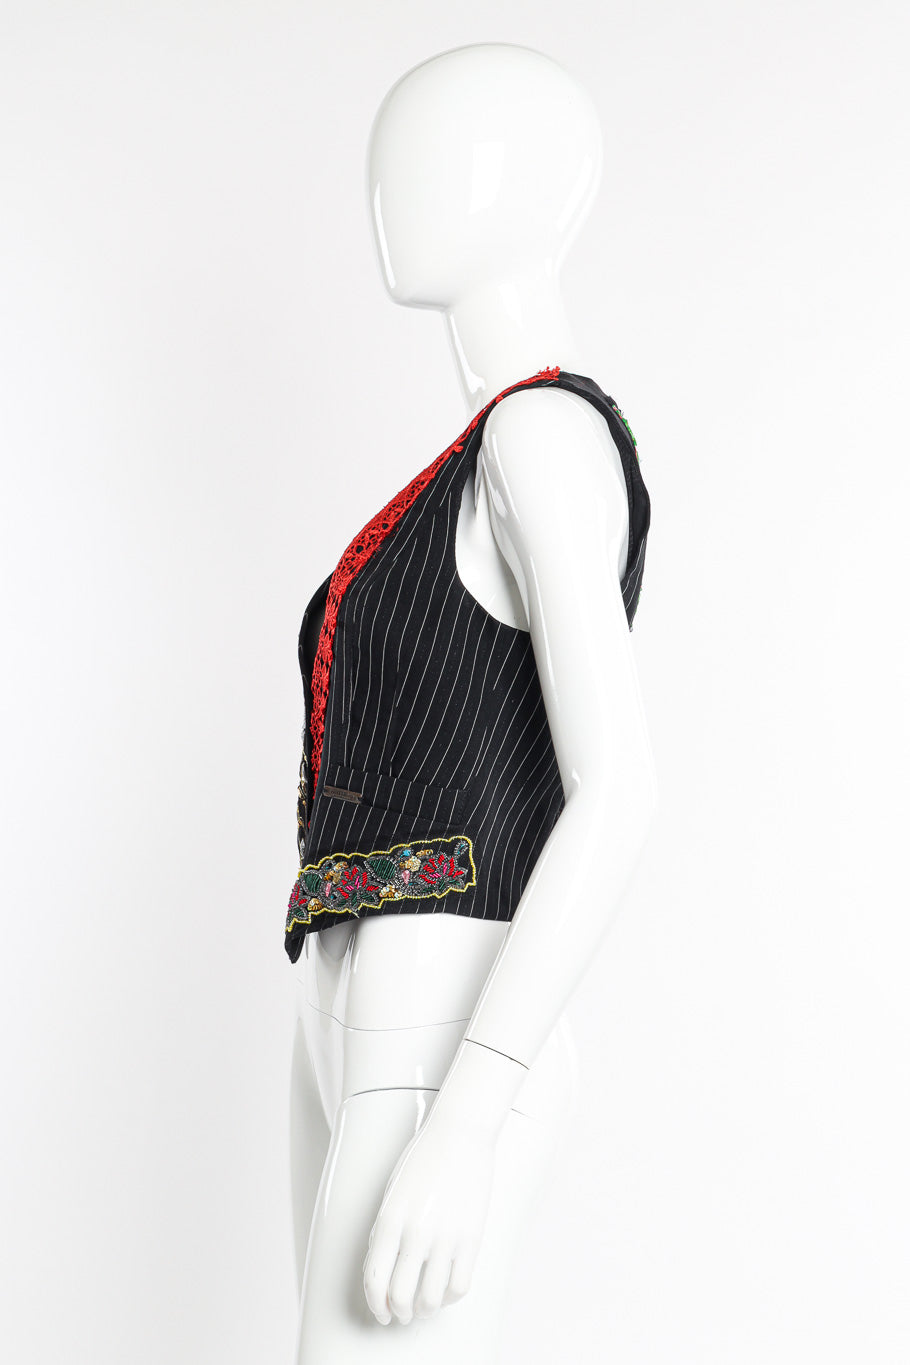 Pinstripe vest by John Galliano on mannequin side @recessla